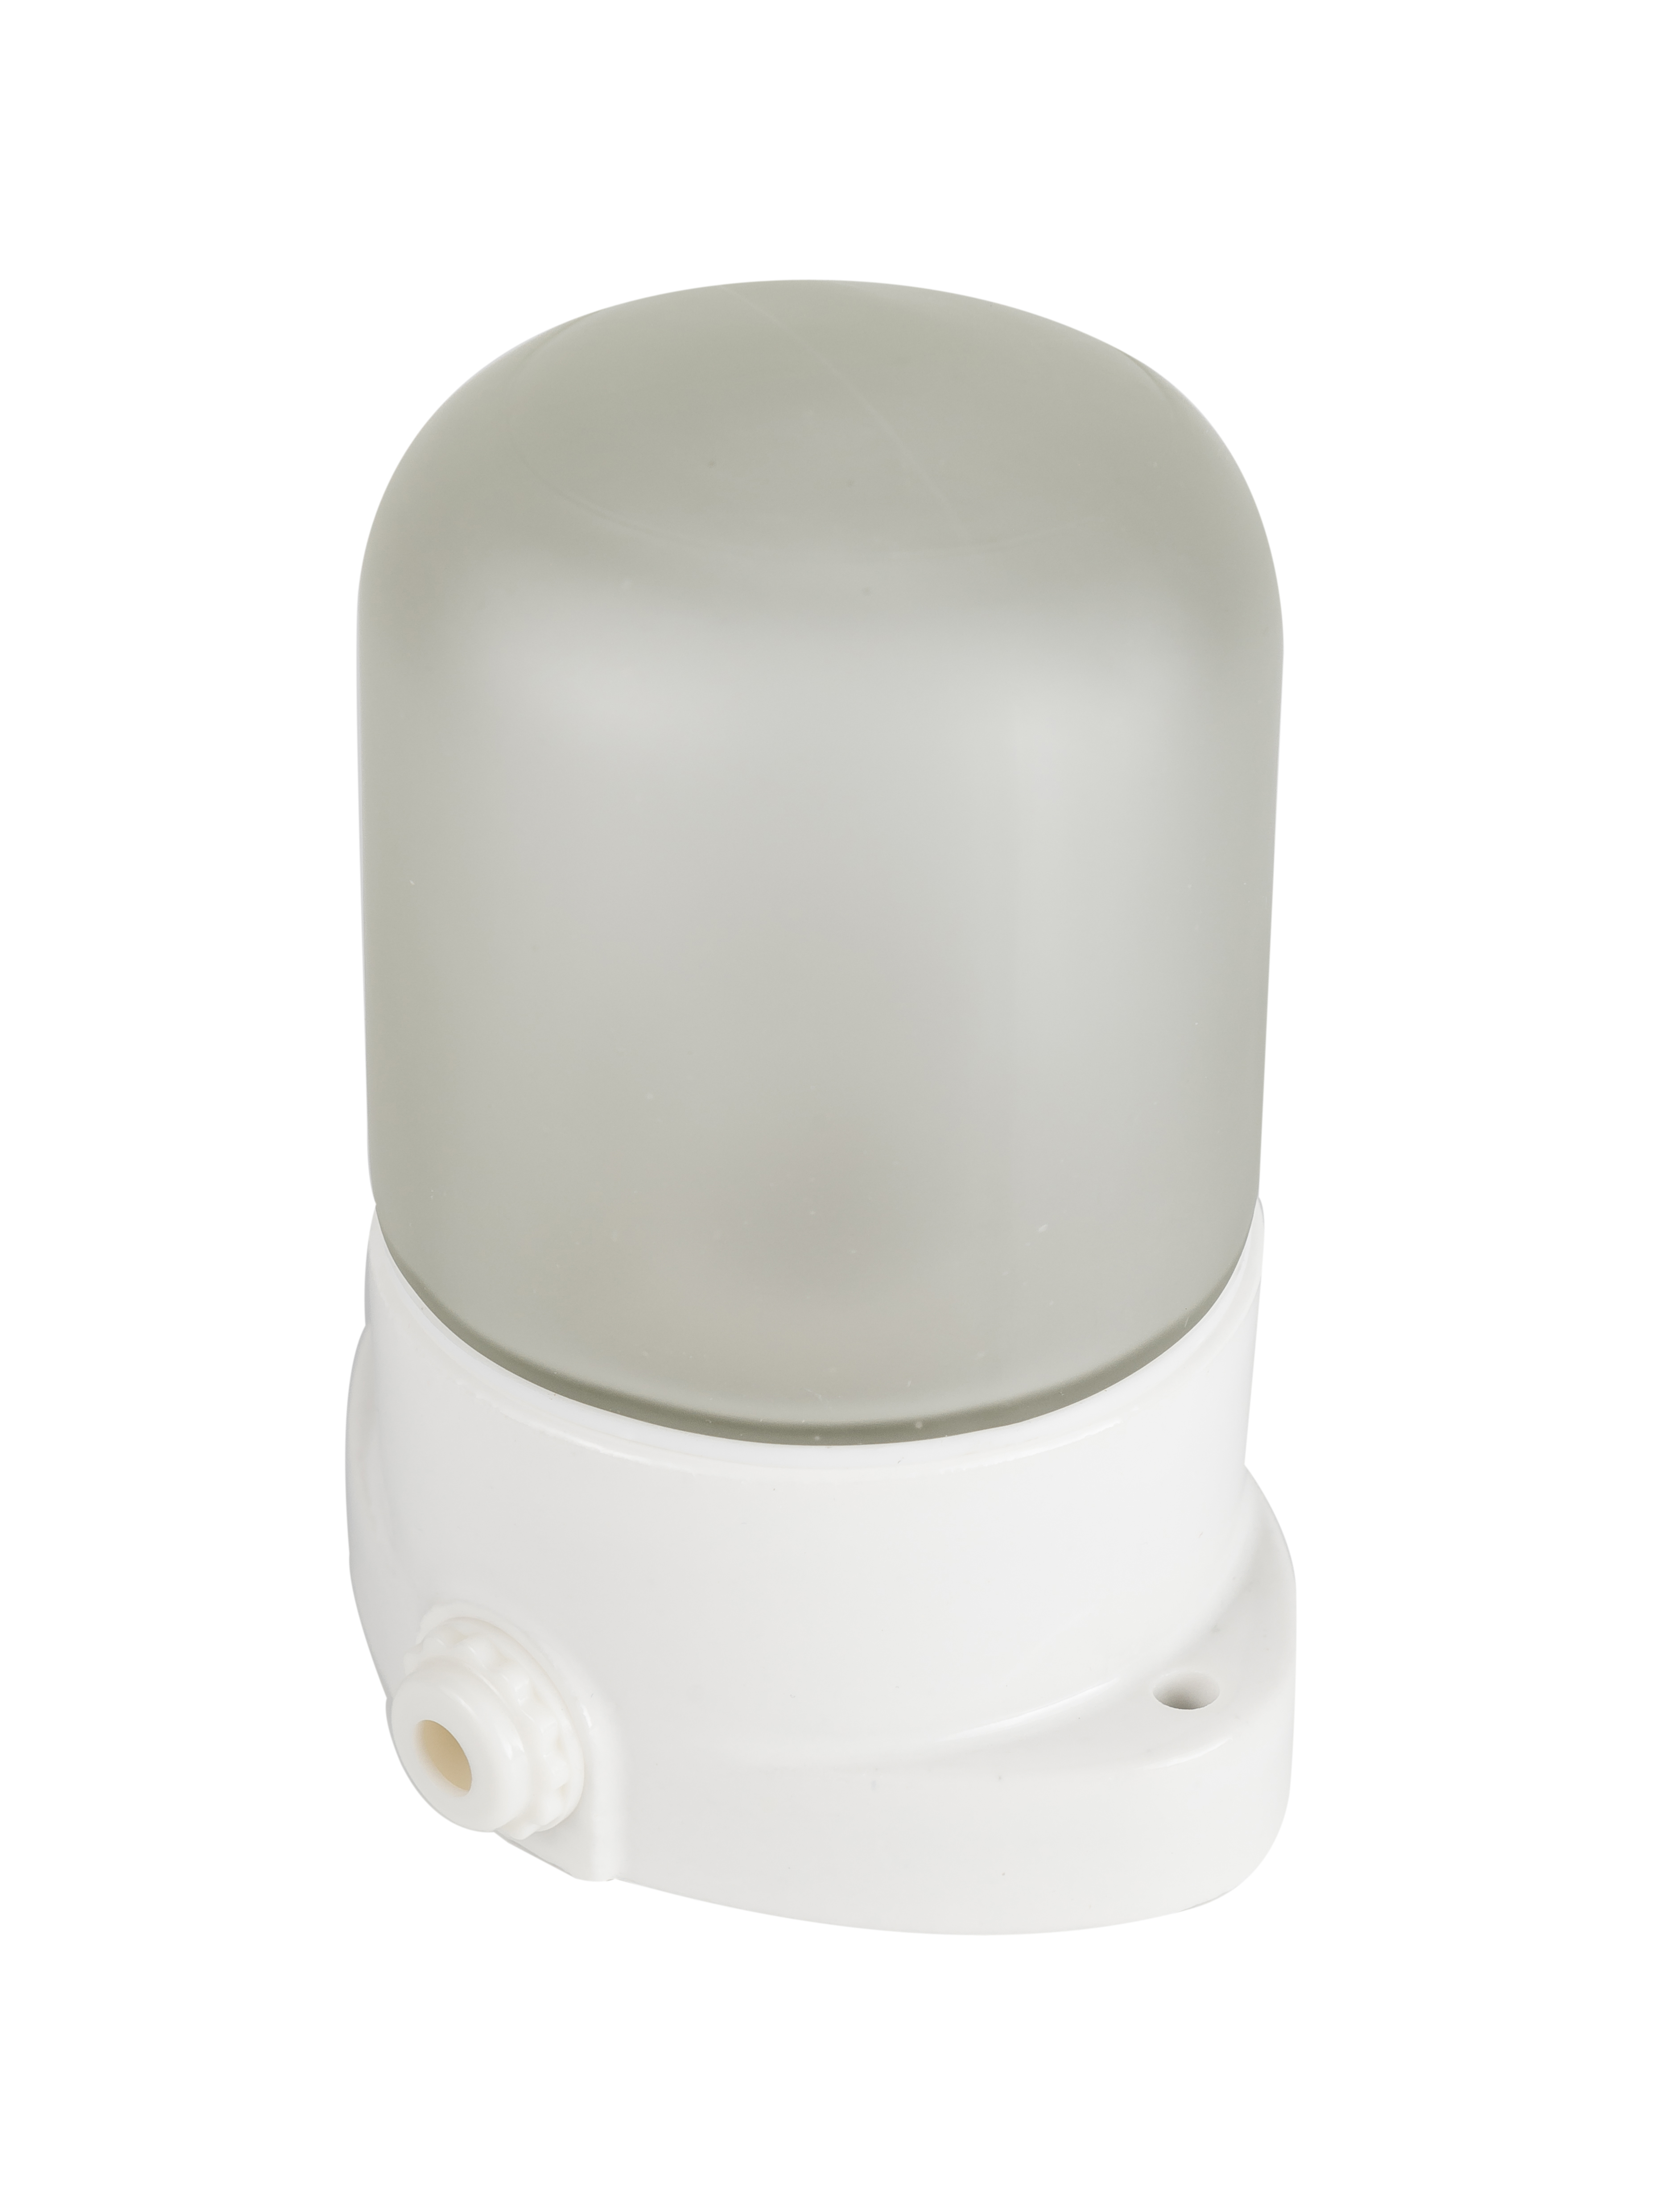 Светильник для бани 10010-1 белая Маяк-1. Светильник LK для сауны настенный (6061). Светильник для бани влагозащищенный термостойкий. Светильник LK-025. Лампа лк